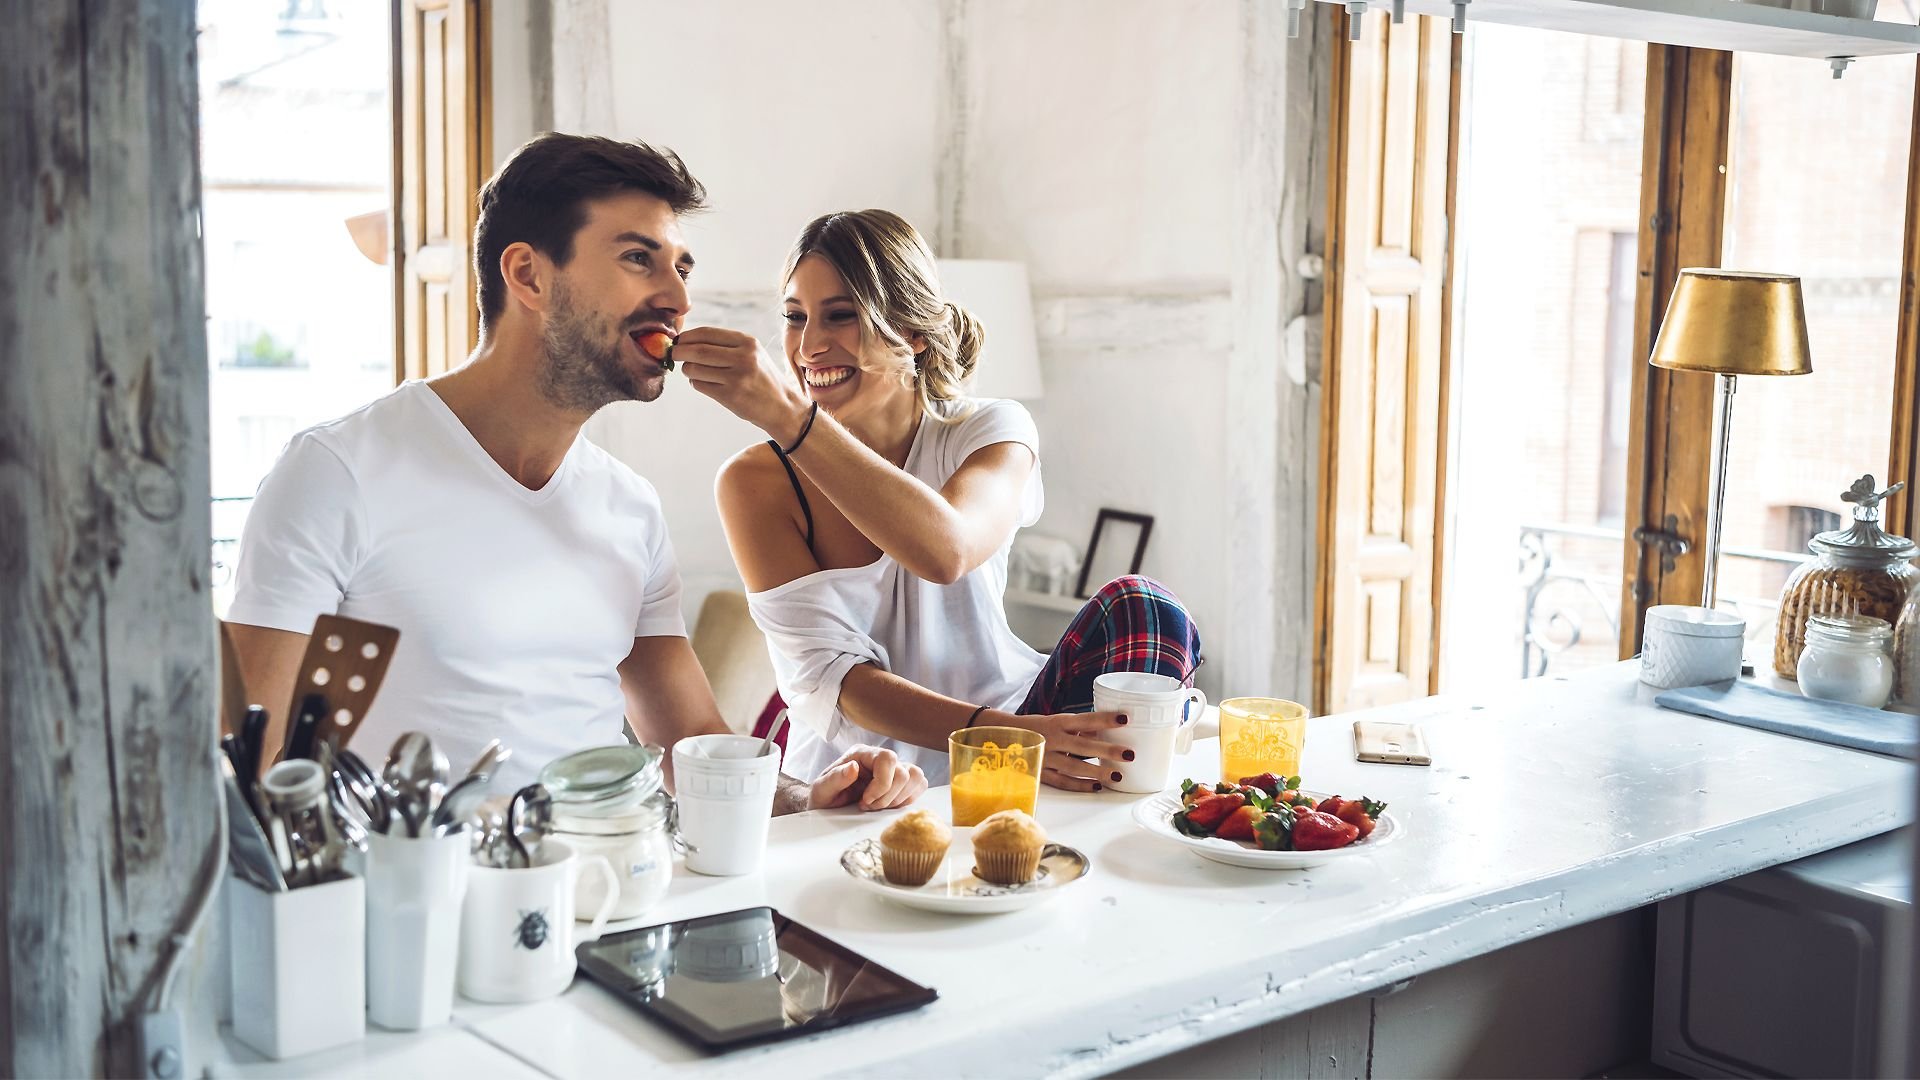 Попить на кухне. Фотосессия на кухне. Завтрак с любимым. Мужчина и женщина завтракают. Влюбленные на кухне.